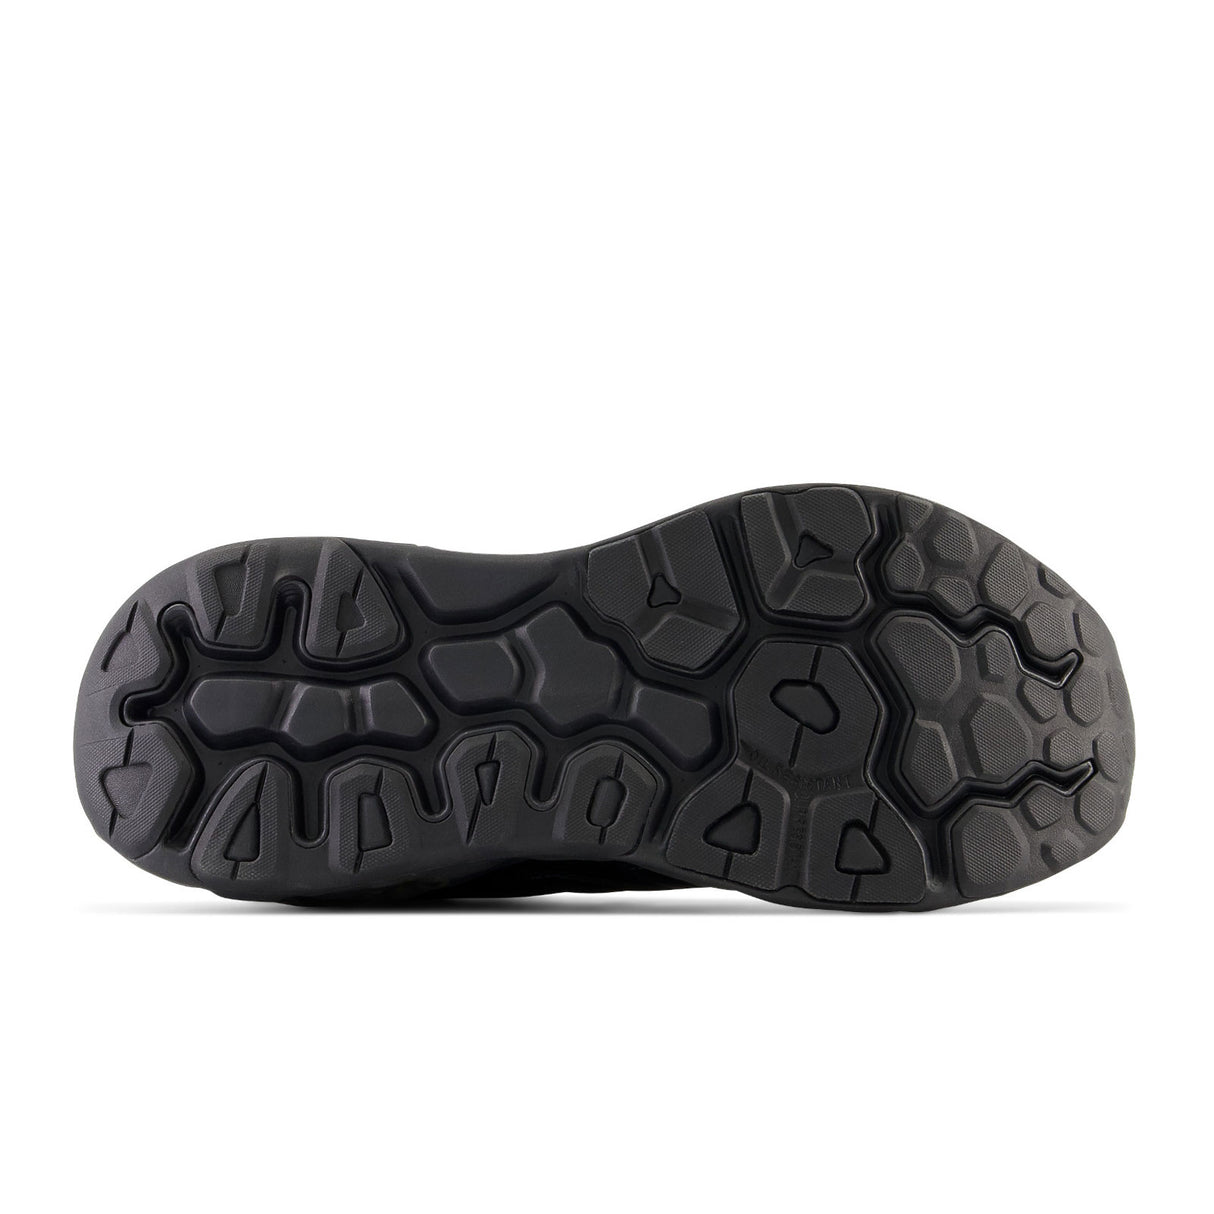 New Balance Fresh Foam X 840Fv1 (Men) - Black Athletic - Walking - The Heel Shoe Fitters